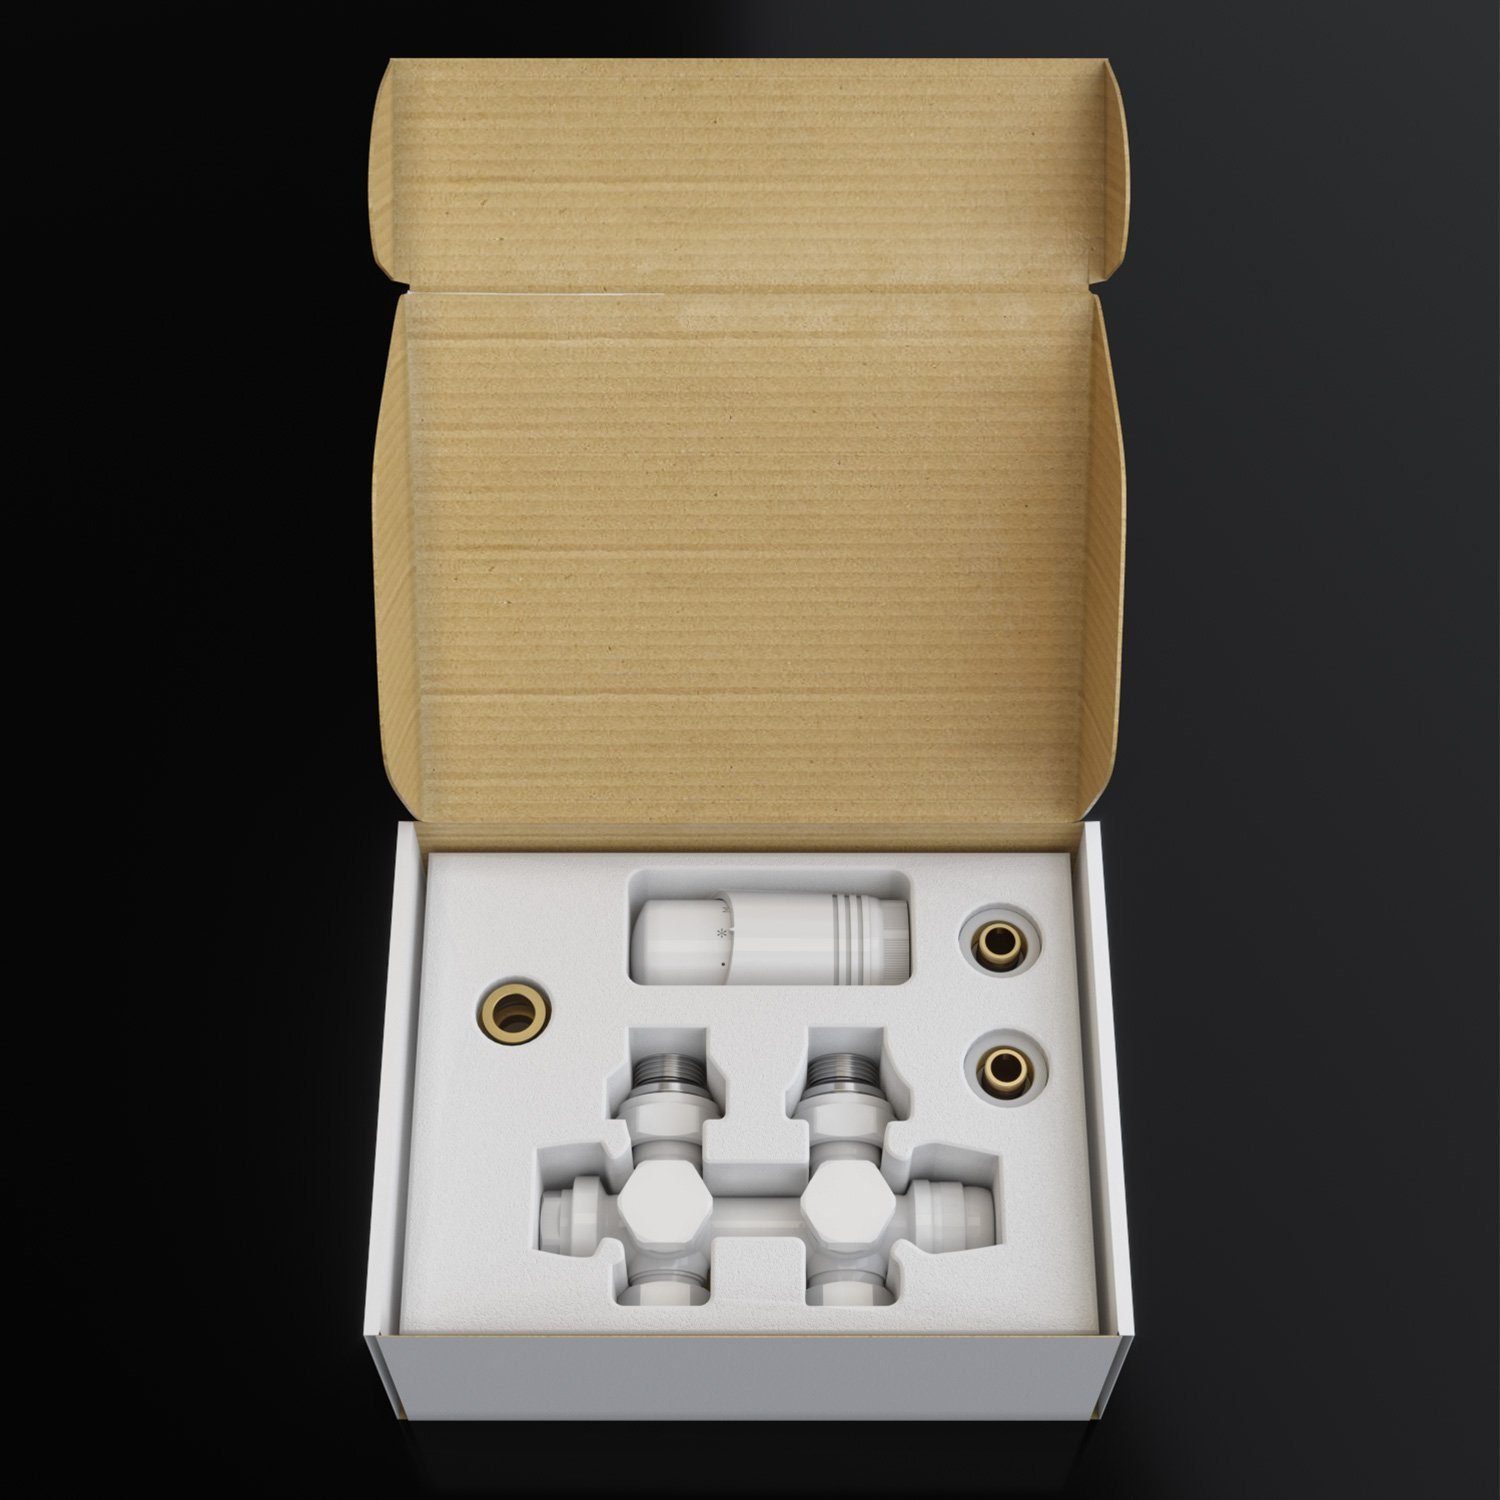 SONNI 1/2" Heizkörper Anschlussarmatur, Weiß G Multiblock ; Set Thermostatkopf für 50mm Heizkörperthermostat Thermostat mit